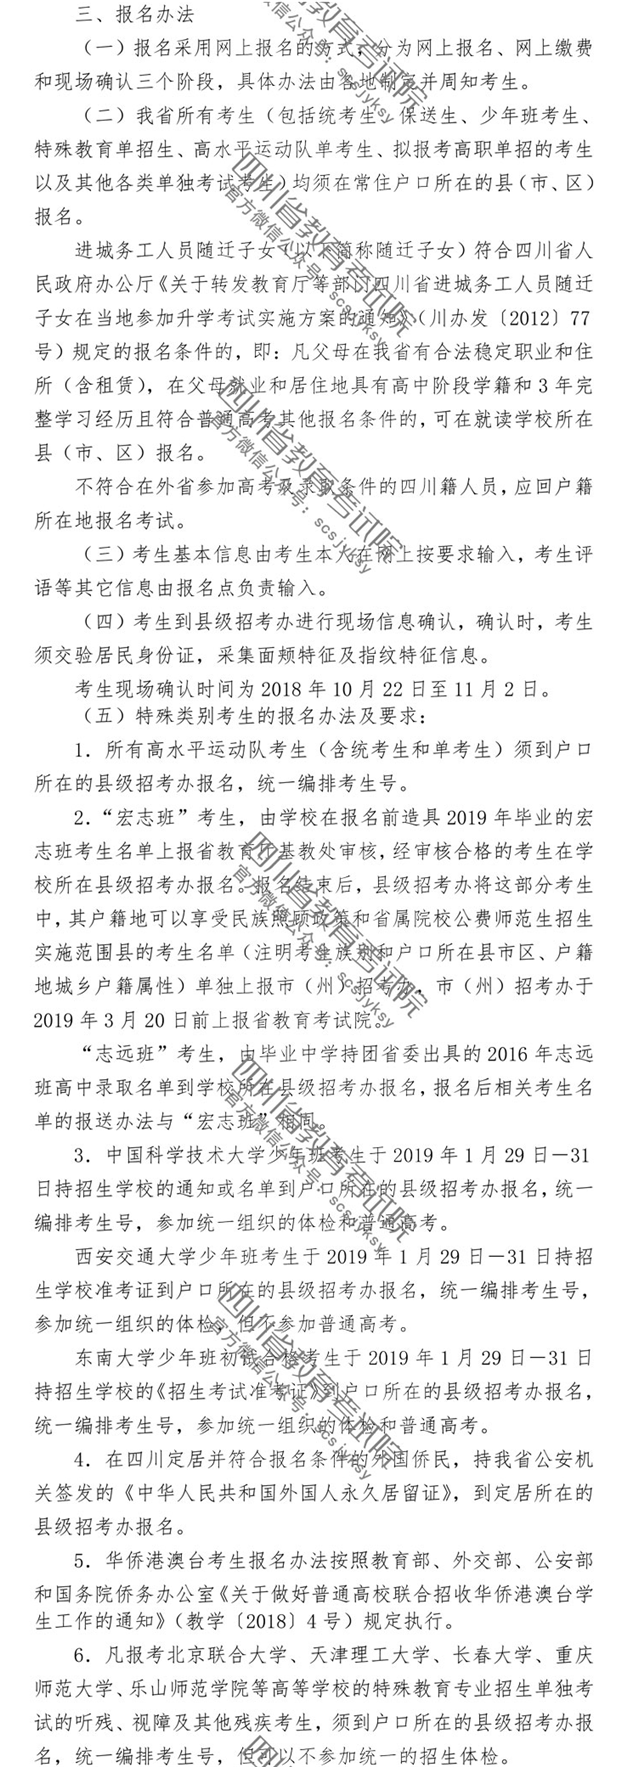 2019年四川省普通高等学校招生考试报名办法